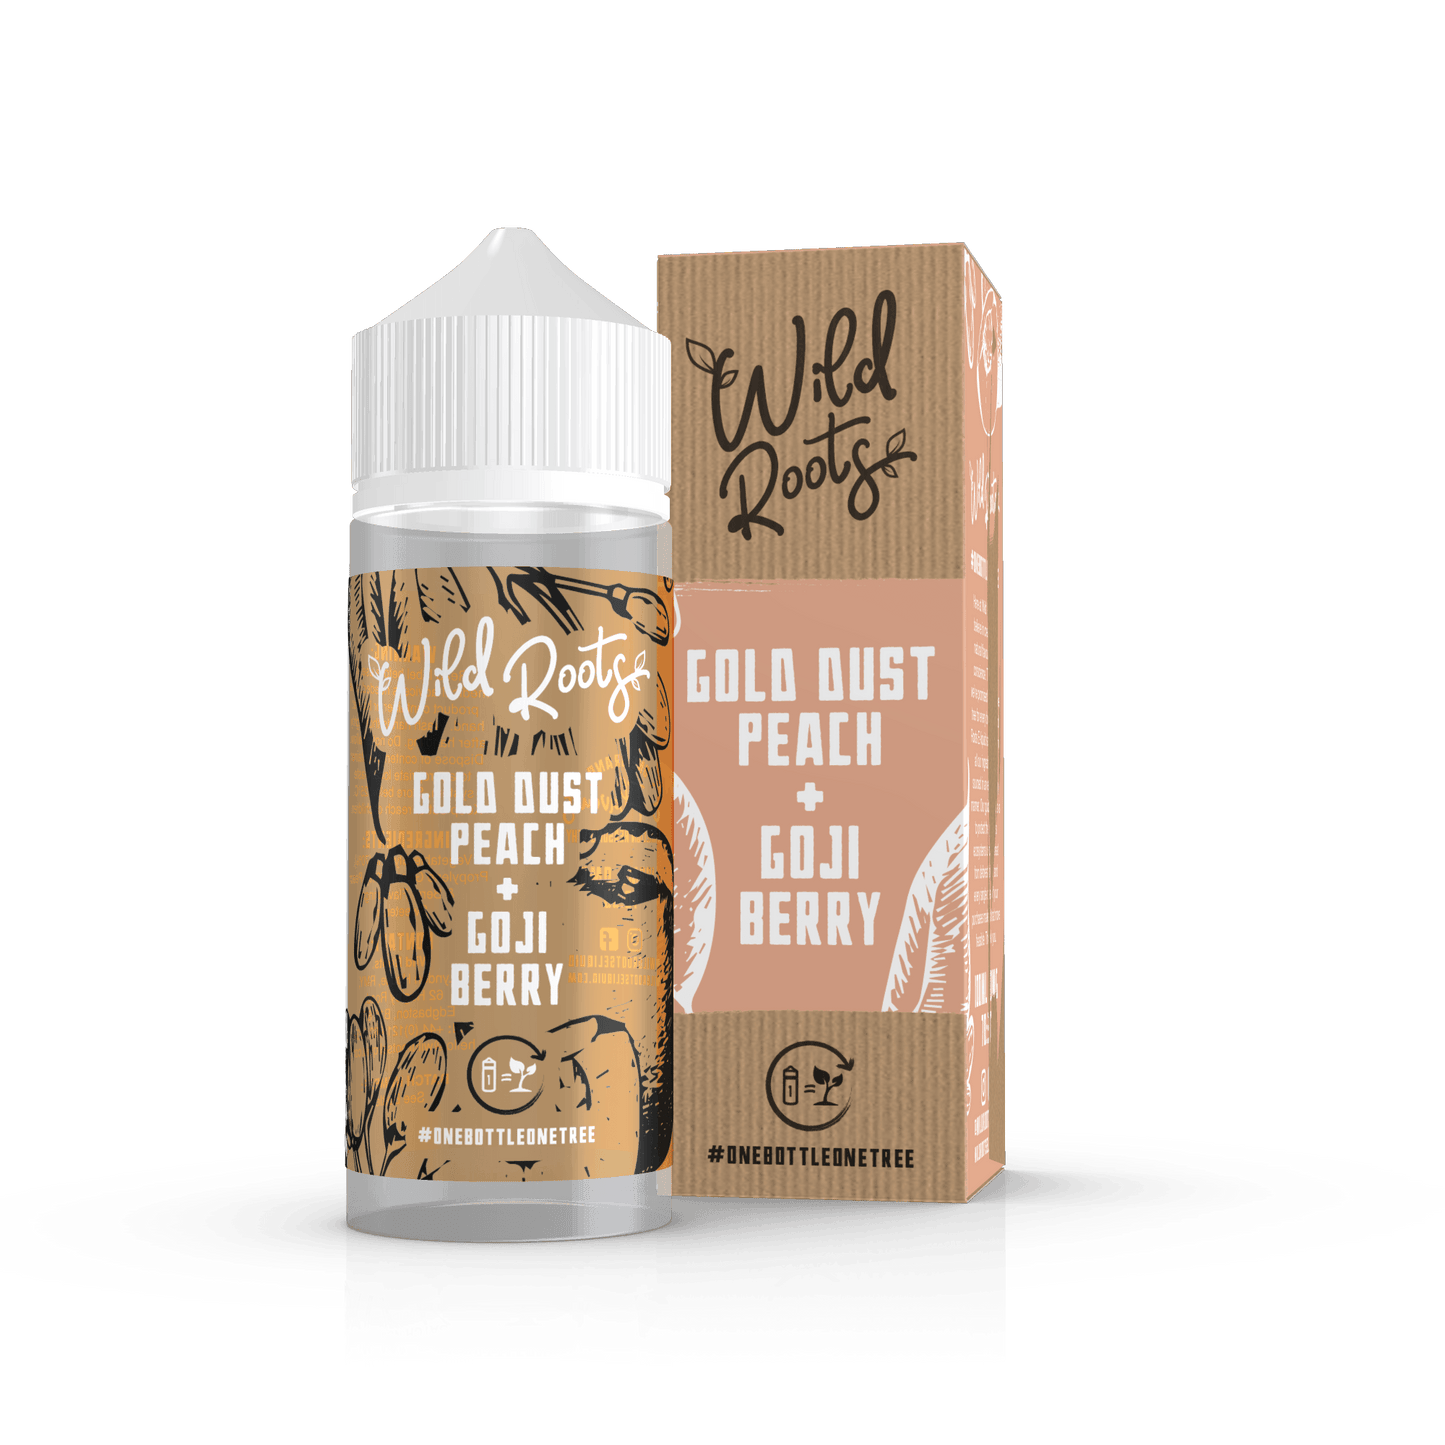 Gold Dust Peach E-Liquid by Wild Roots